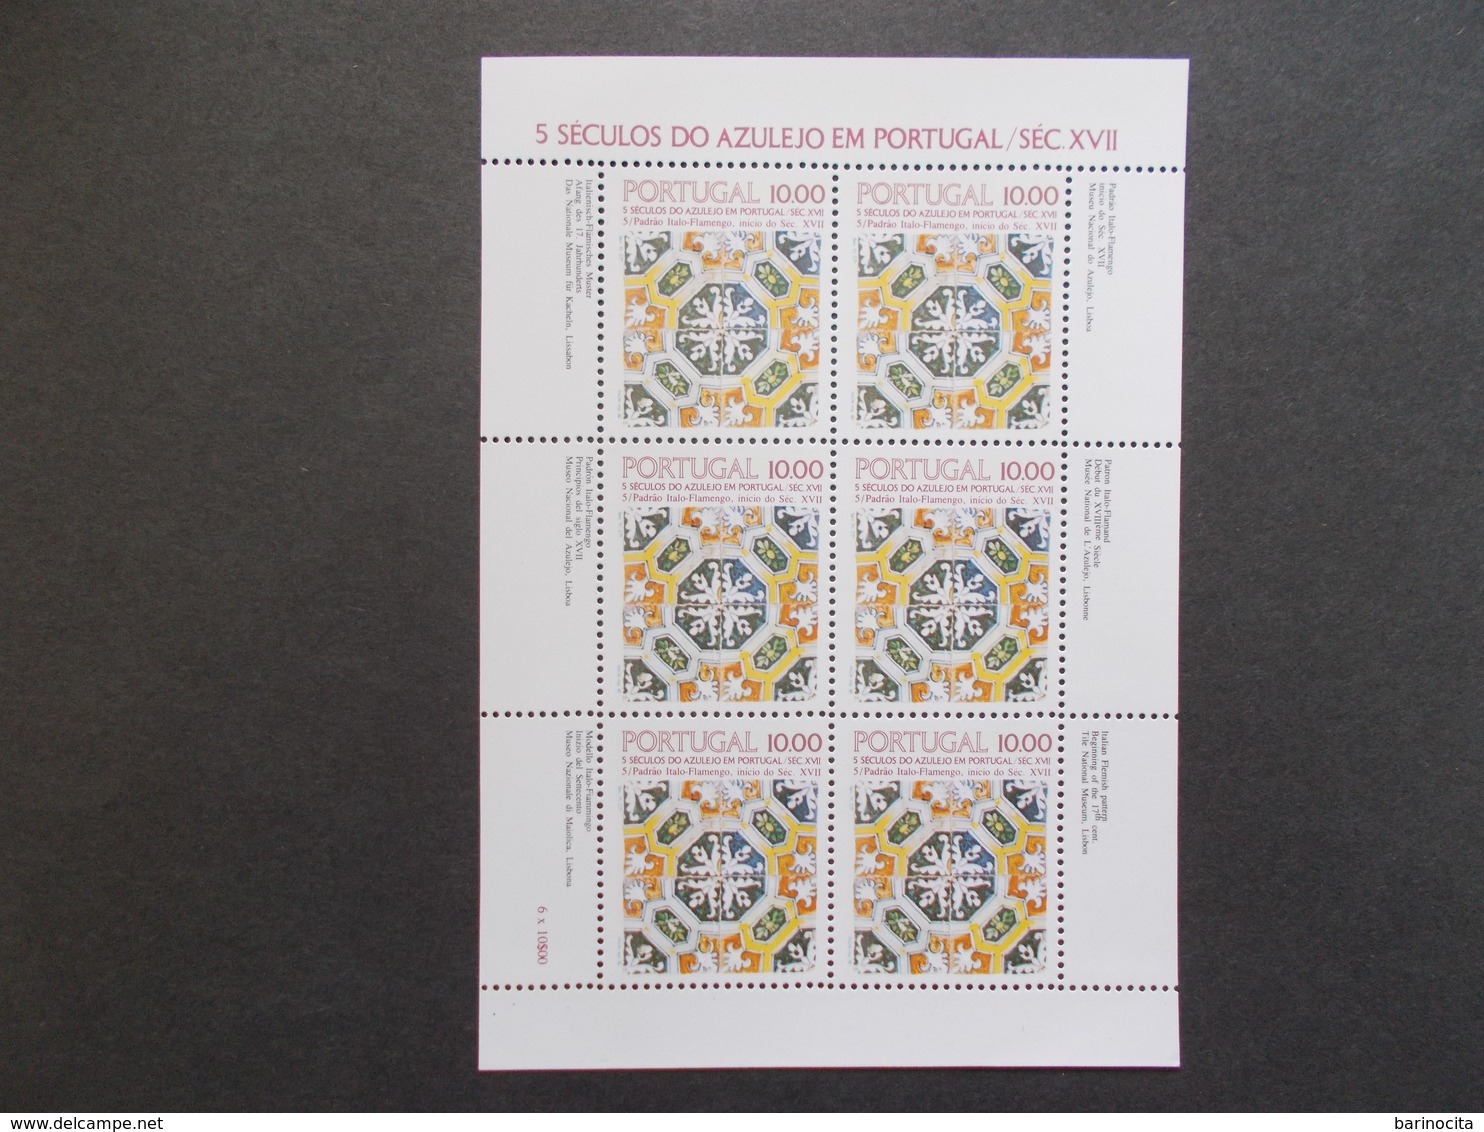 PORTUGAL   -  FEUILLES  Complete  Di Timbres   N° 1536 A   Année 1982   Neuf XX   ( Voir Photo )  49 - Feuilles Complètes Et Multiples